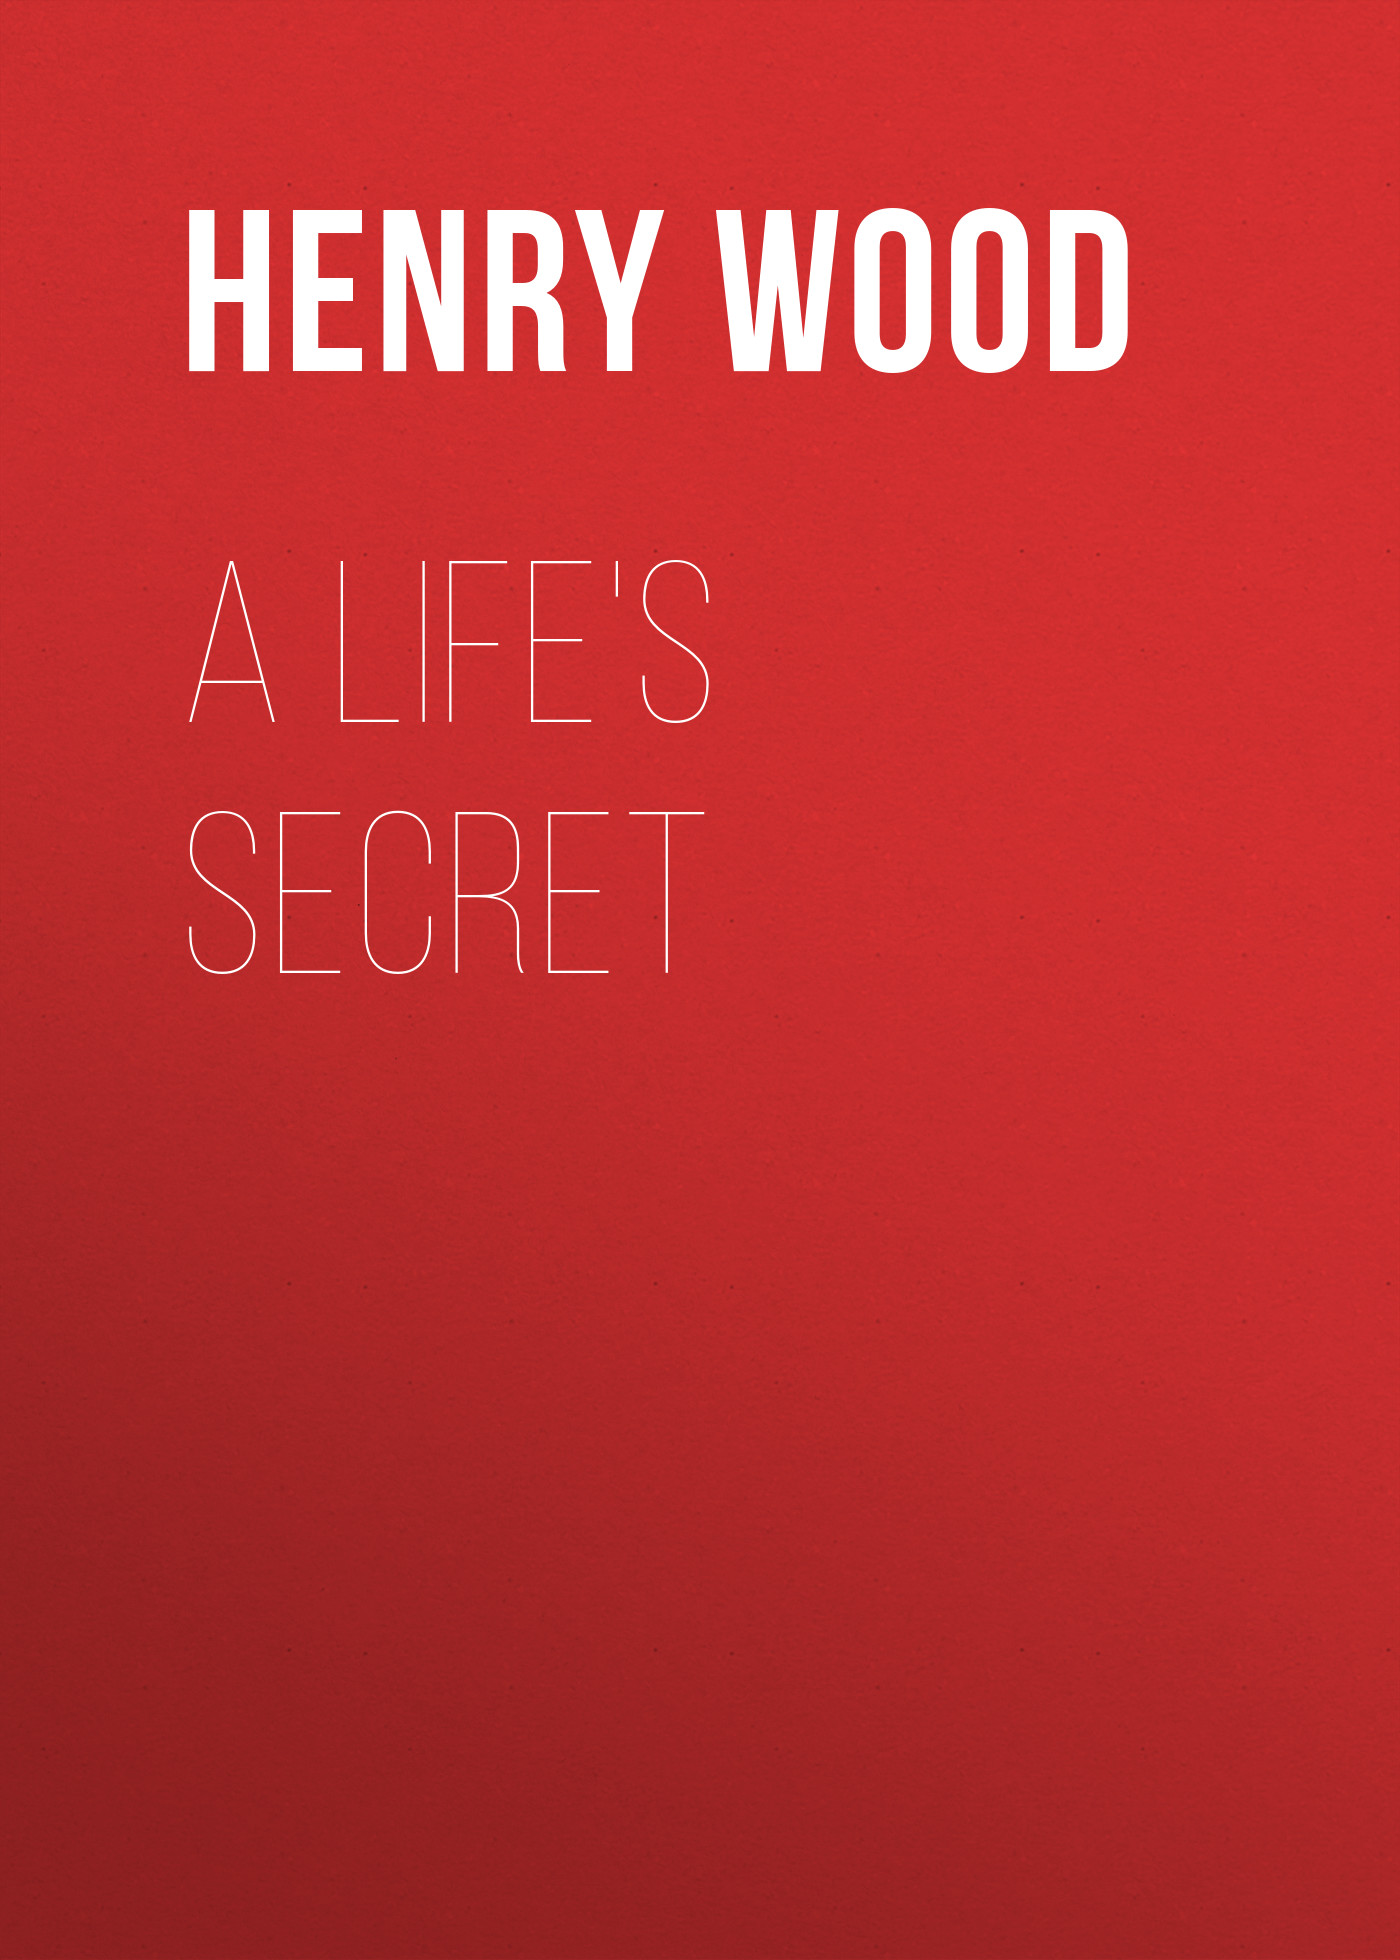 Книга A Life's Secret из серии , созданная Henry Wood, может относится к жанру Зарубежная классика, Литература 19 века, Зарубежная старинная литература. Стоимость электронной книги A Life's Secret с идентификатором 35007337 составляет 0 руб.